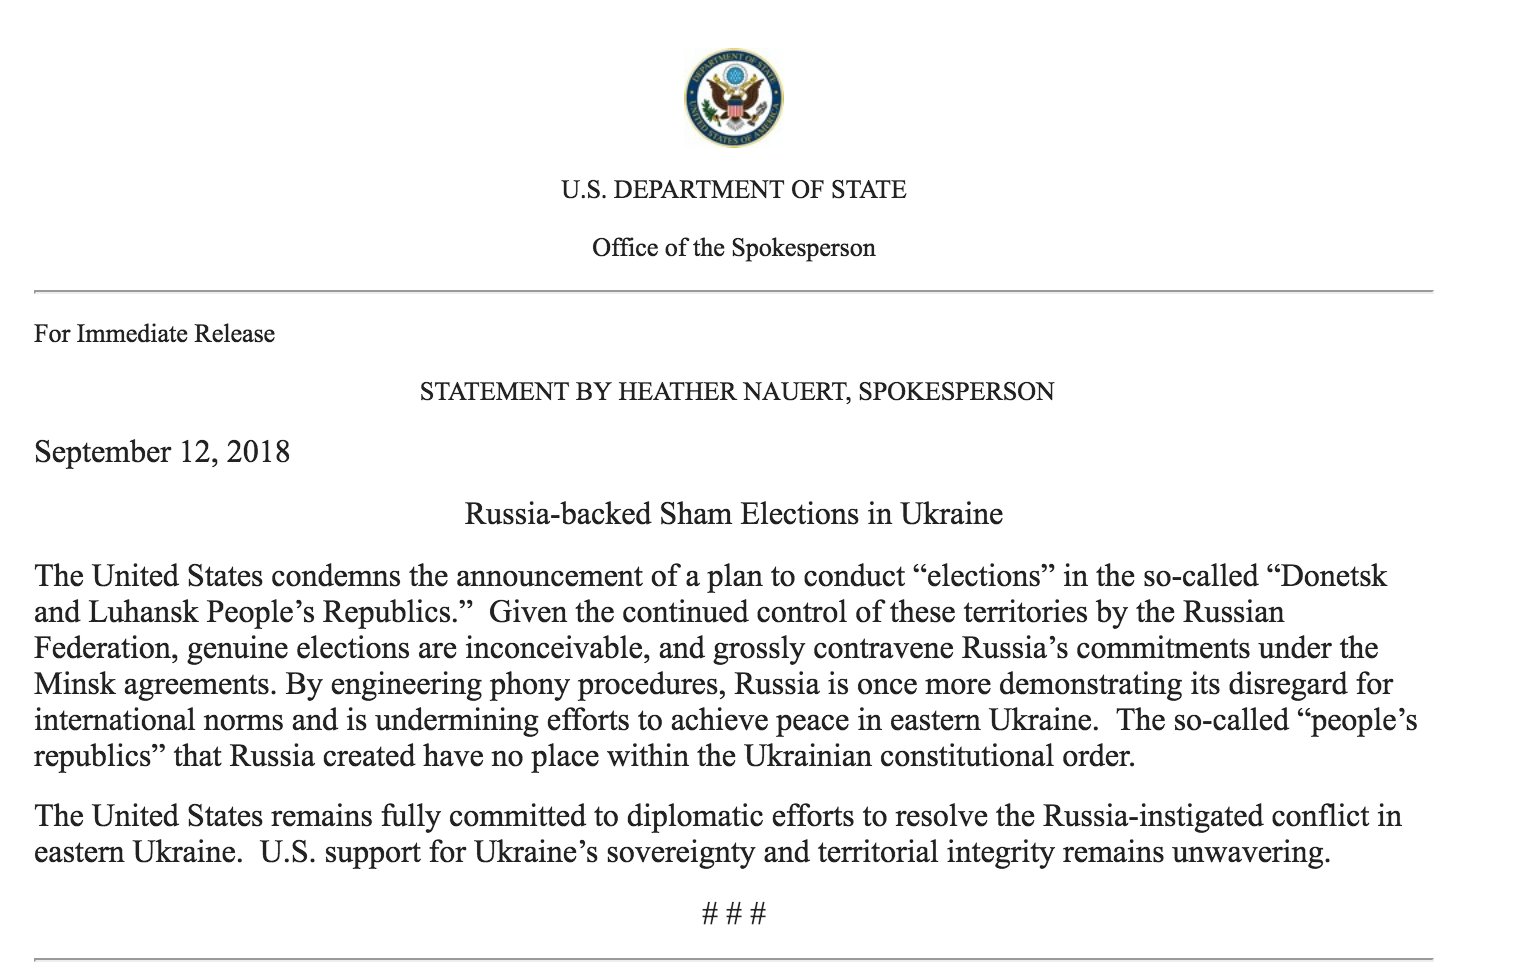 Spokesperson Heather Nauru's September 12, 2018 statement on Russia-Backed Sham Elections in Ukraine.